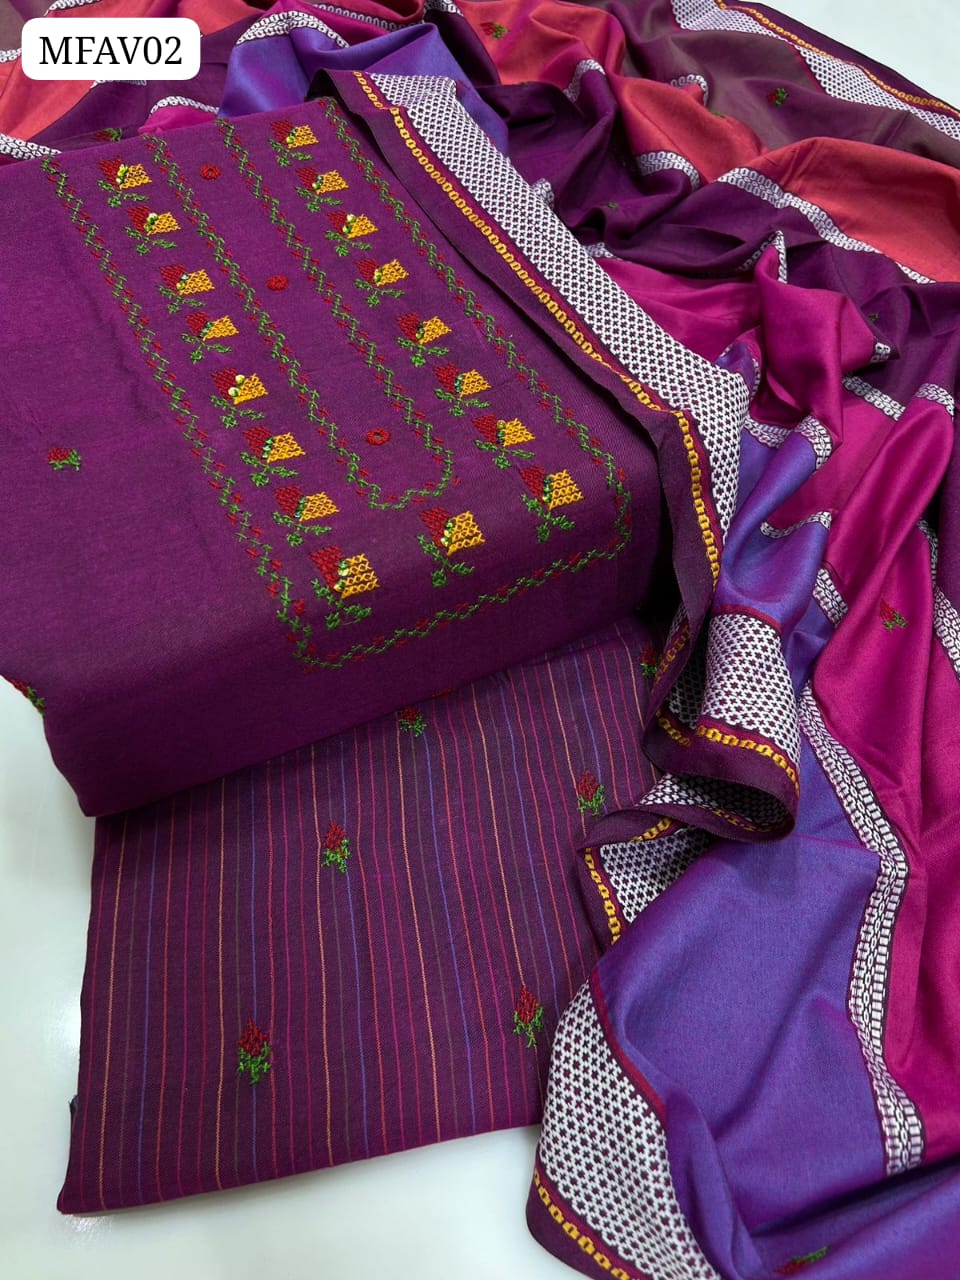 Self Linen Fabric Karahi Handmade Cross Stitch Work Shirt With Linen Karahi Dupatta And Linen Karahi Handmade Trouser 3Pc Dress